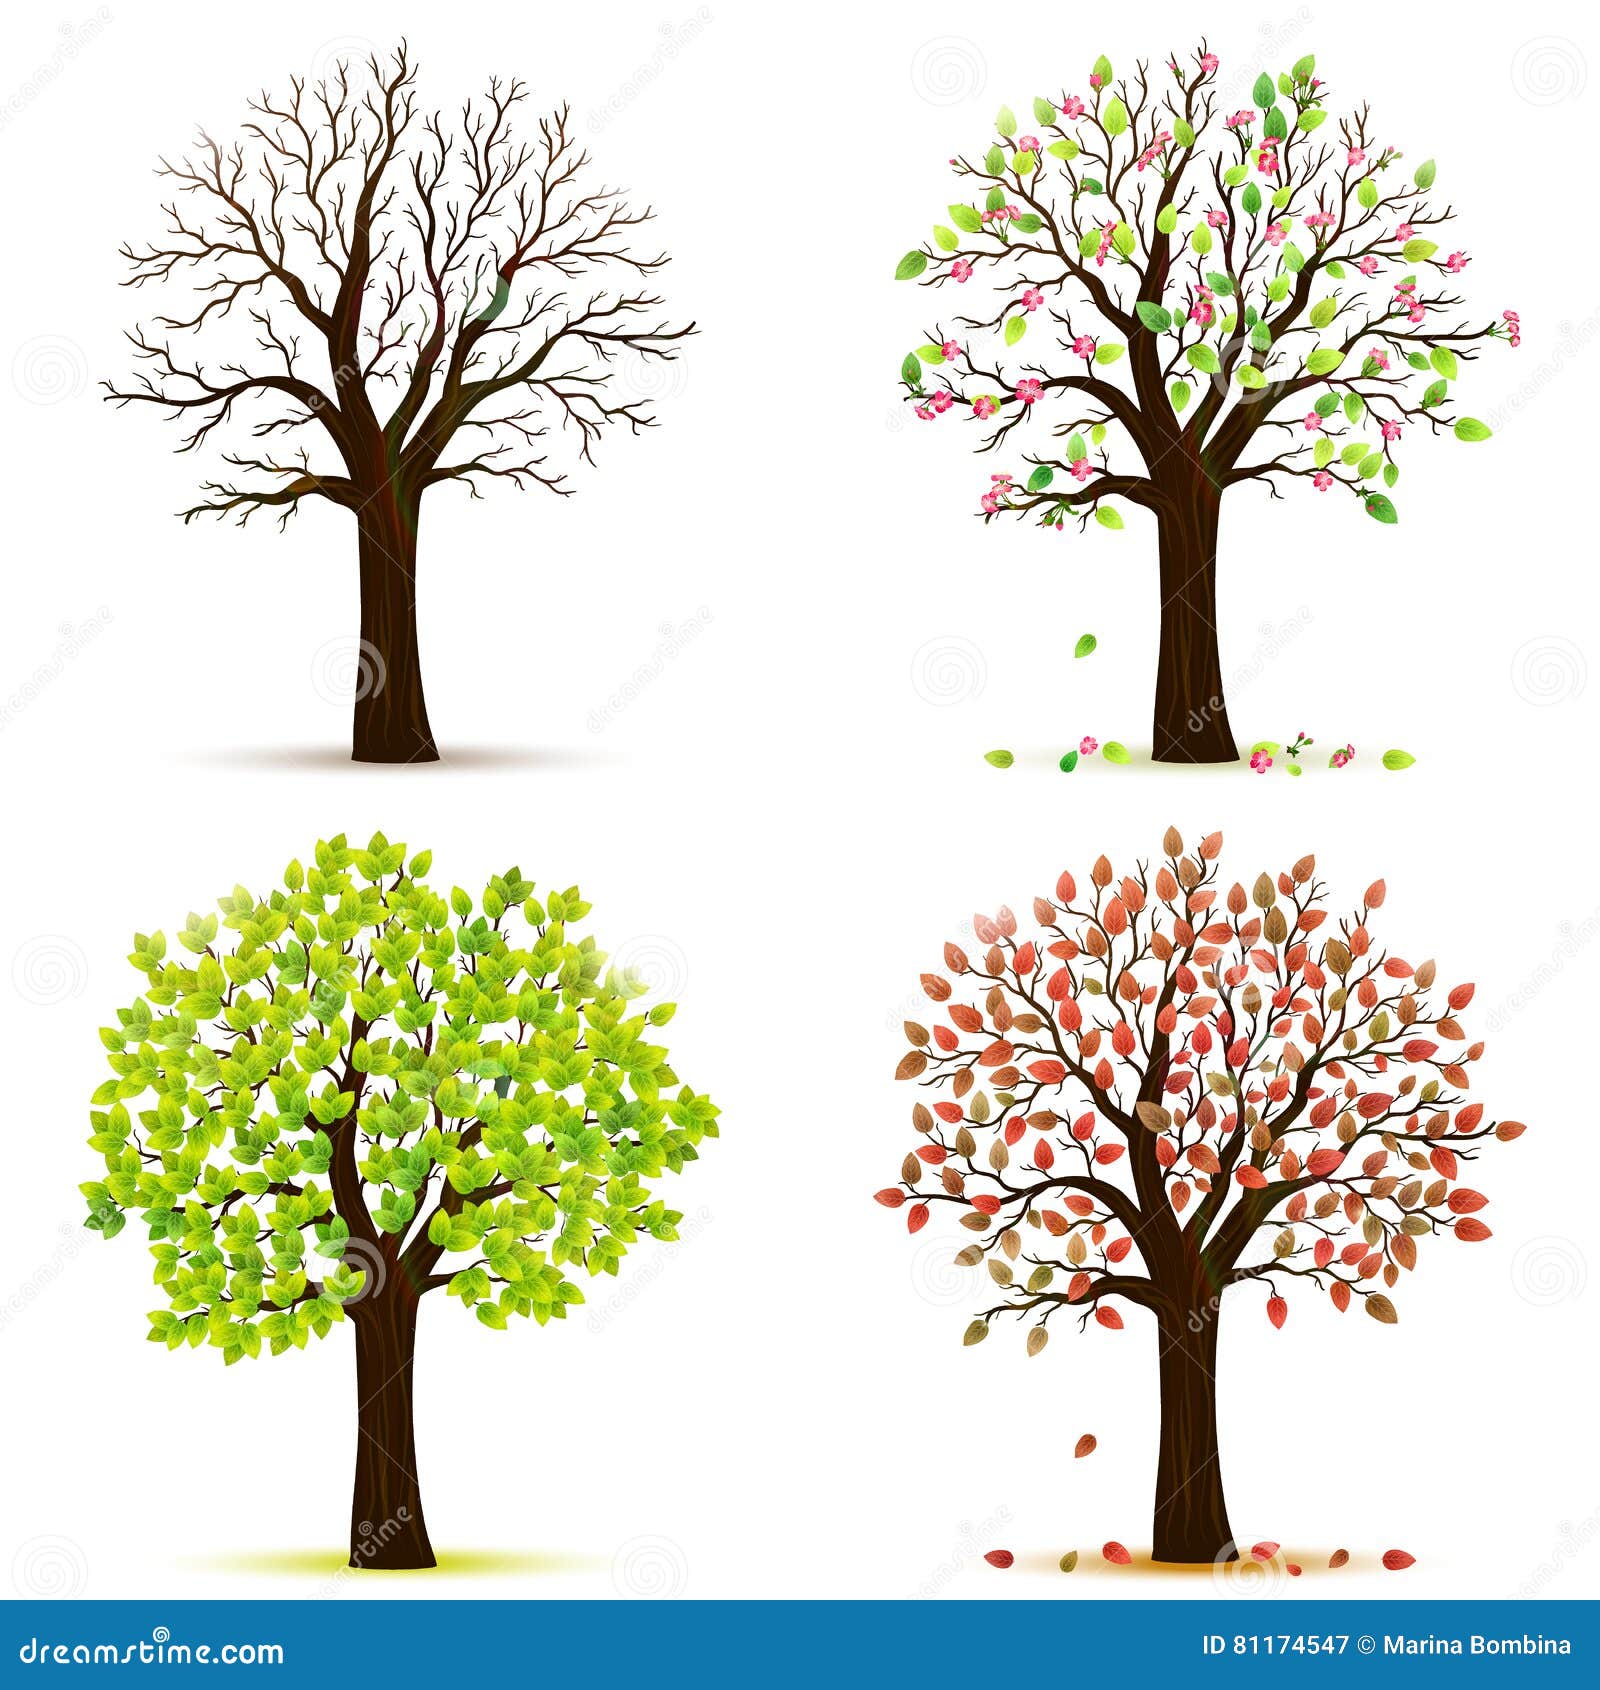 Cây bốn mùa là biểu tượng cho sự thay đổi trong cuộc sống, và hình ảnh này sẽ khiến bạn cảm thấy như đang điều khiển thời gian, theo dõi sự trưởng thành của cây qua mùa xuân, hạ, thu và đông.